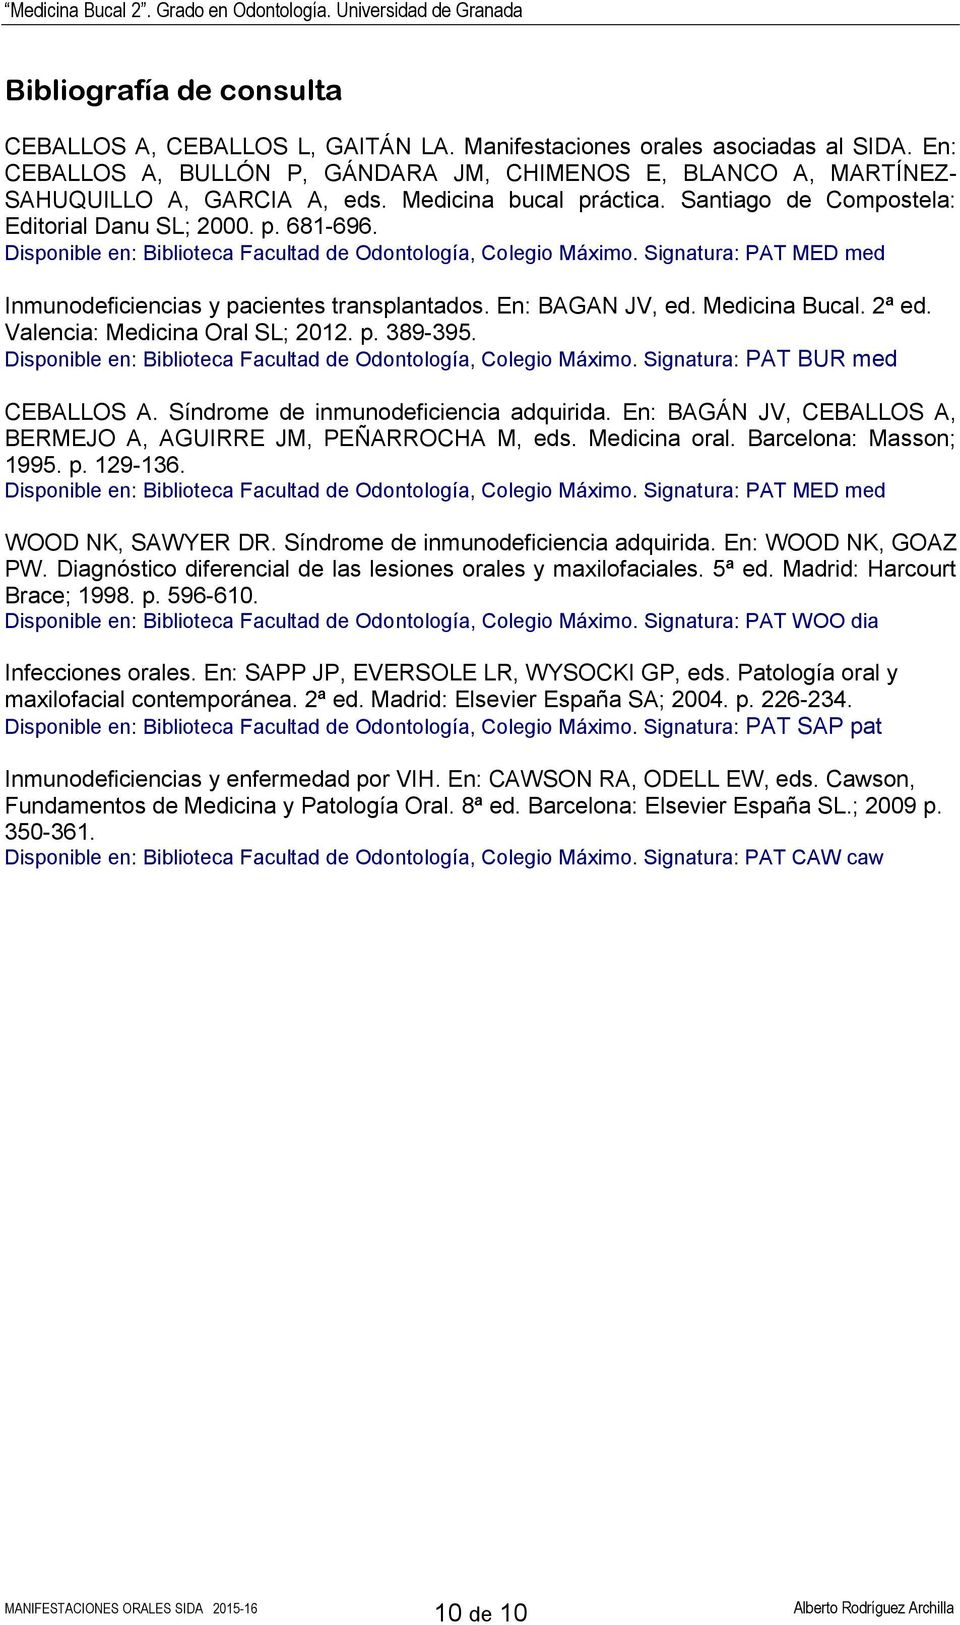 Signatura: PAT MED med Inmunodeficiencias y pacientes transplantados. En: BAGAN JV, ed. Medicina Bucal. 2ª ed. Valencia: Medicina Oral SL; 2012. p. 389-395.